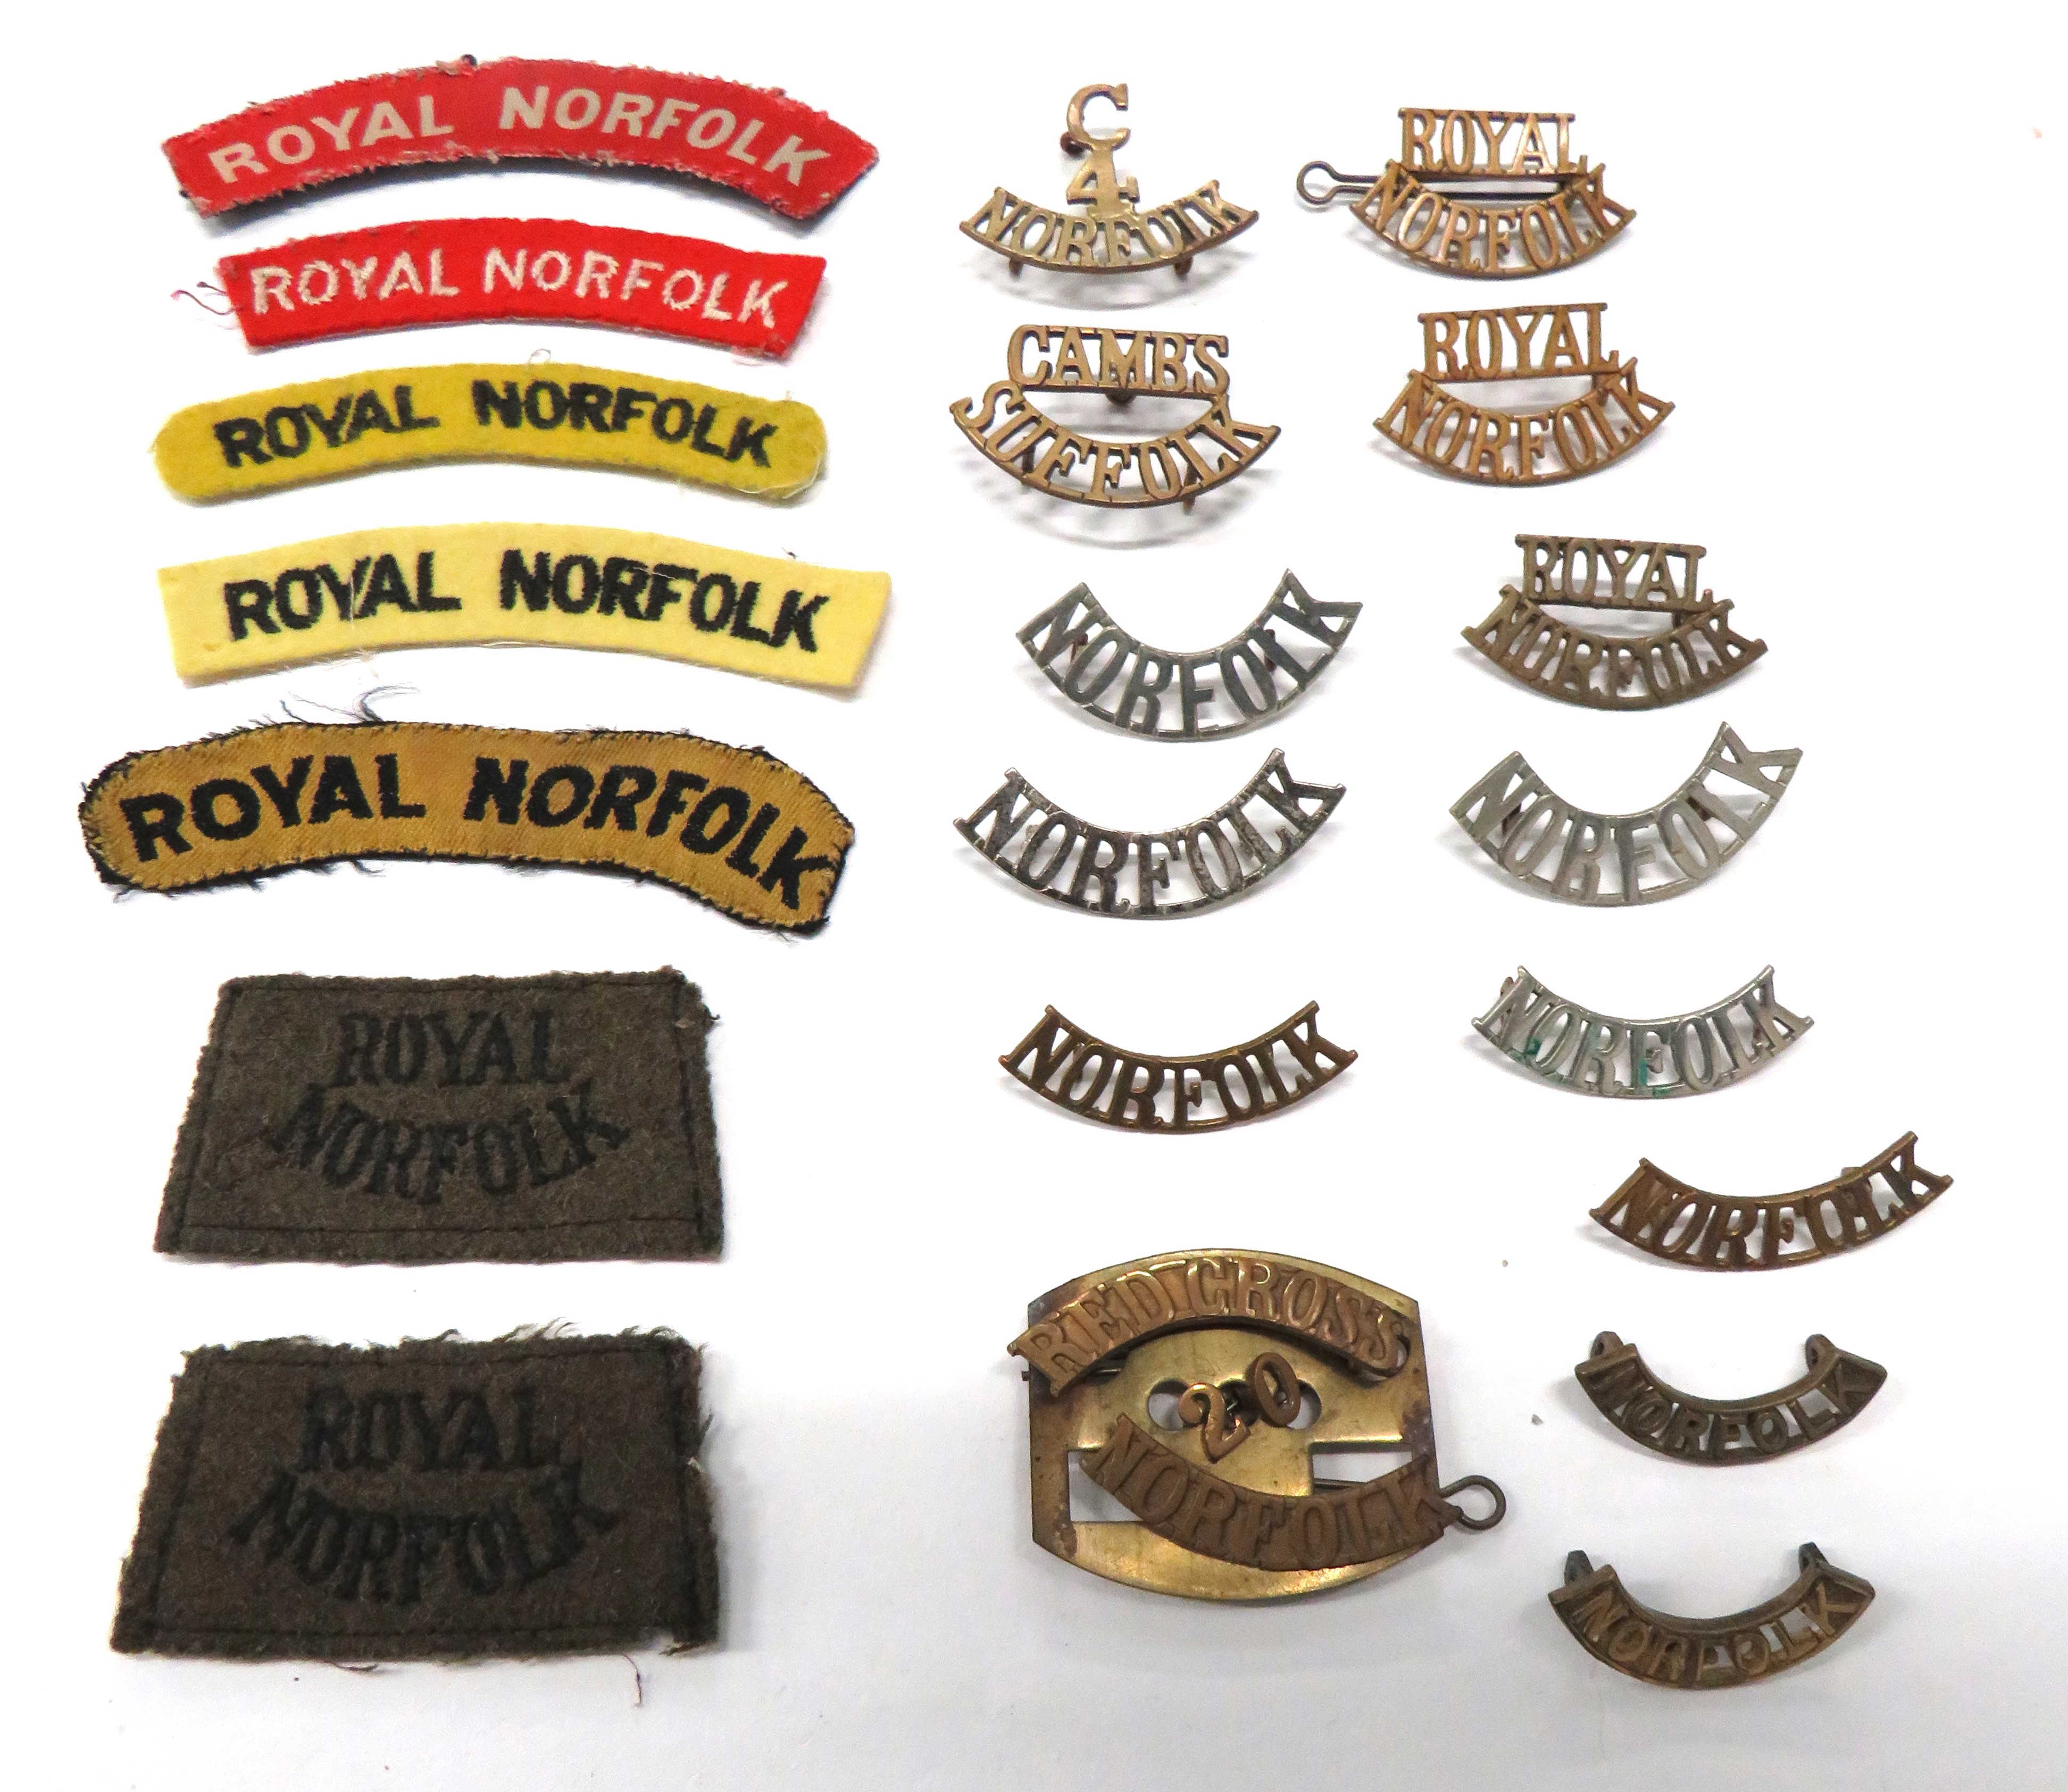 21 x Norfolk Shoulder Titles brass titles include C.4. Norfolk ... Norfolk ... Royal Norfolk ...